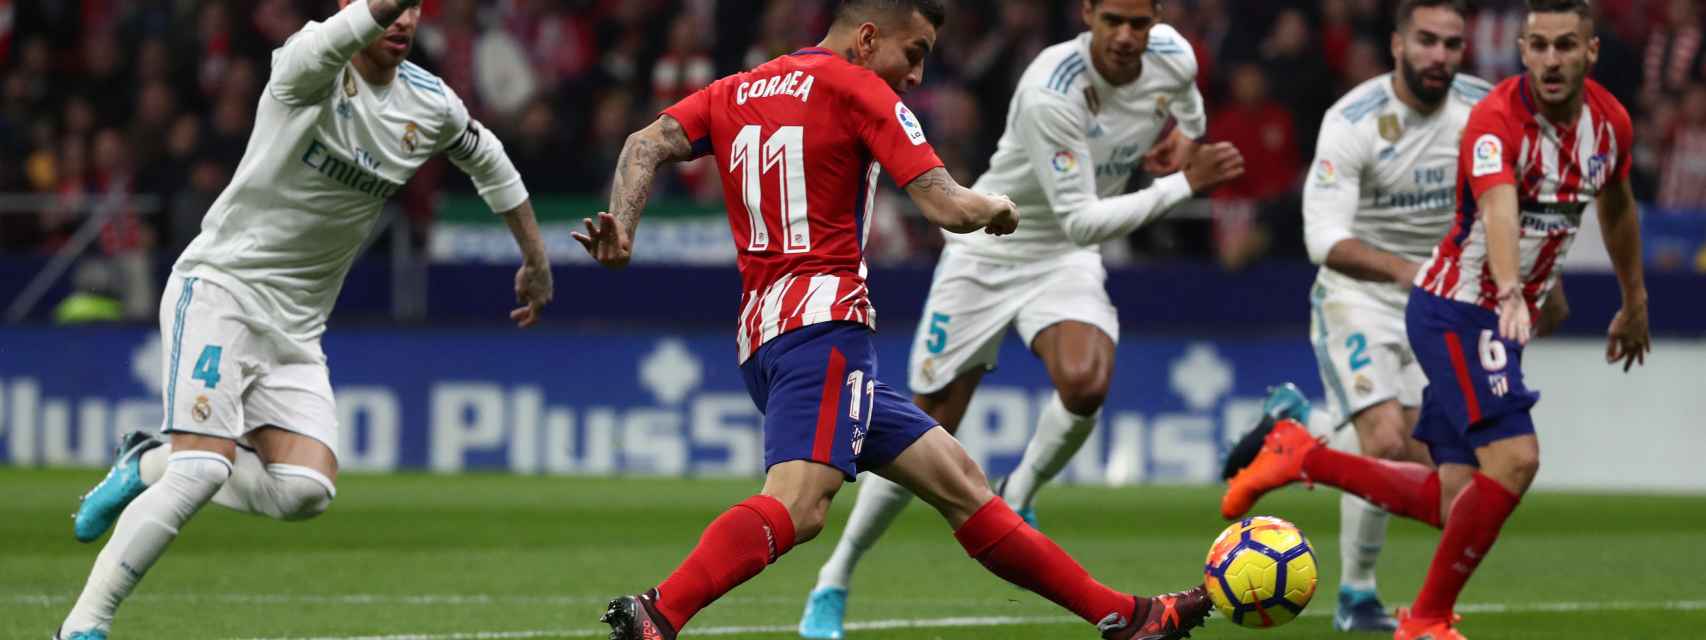 Un momento del partido Atlético - Real Madrid.